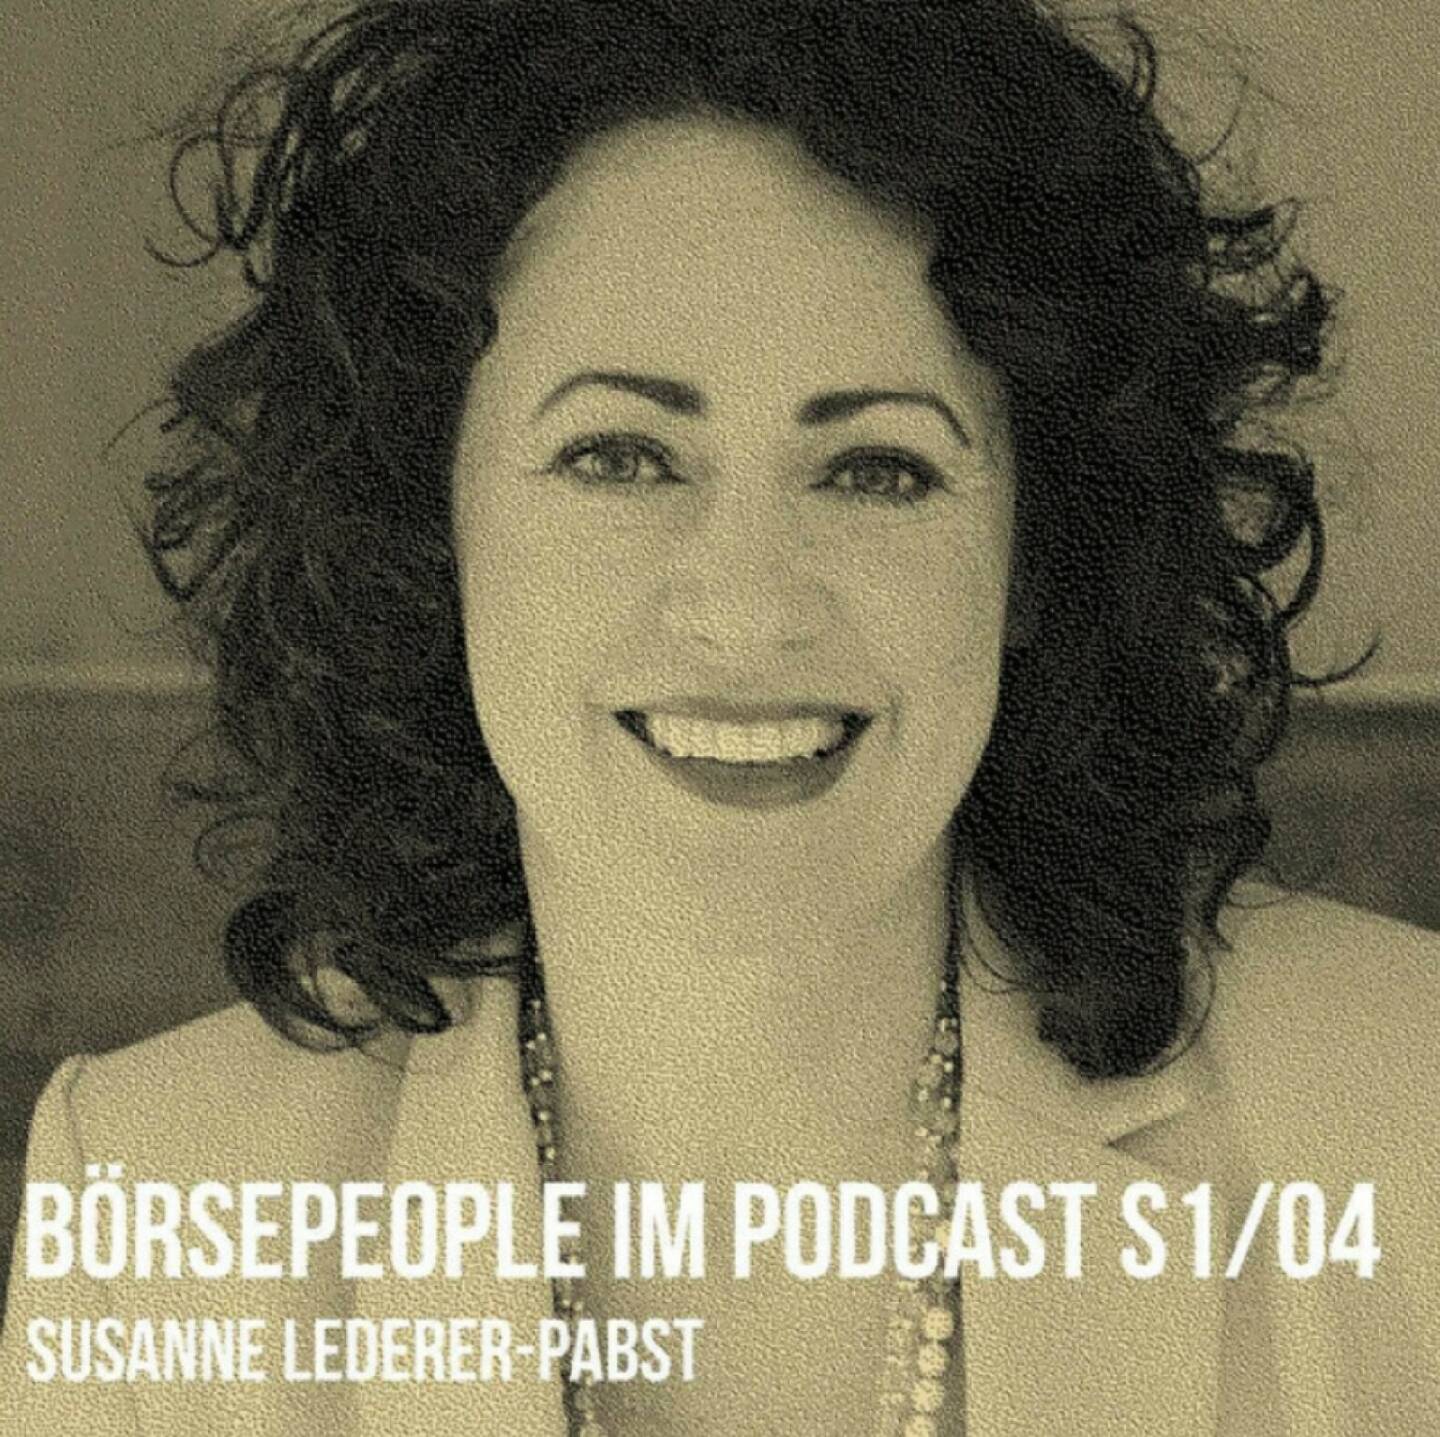 Susanne Lederer-Pabst ist der 4. Gast in unserer Börsepeople Season 1 unter http://www.boersenradio.at/people 